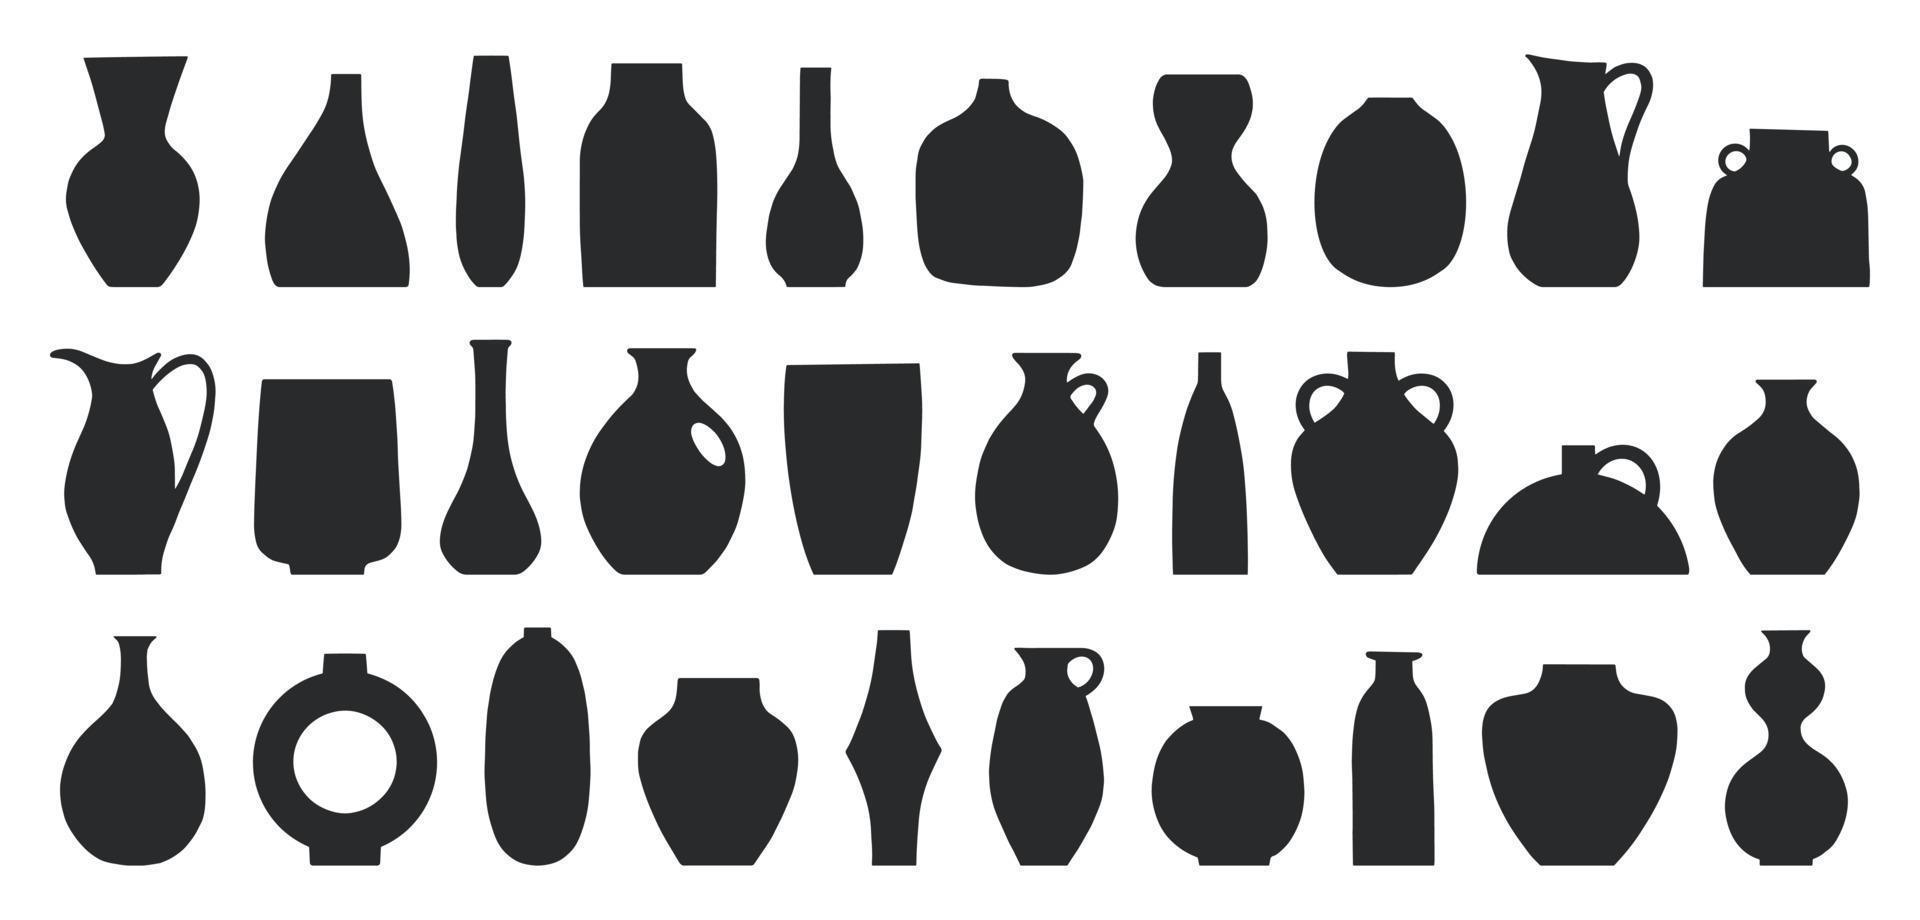 uppsättning av olika former av dekorativa vaser och krukor vektorillustration. minimalistiska former i svarta färger. samtida konst för heminredning. designelement för affisch, omslag, broschyr vektor